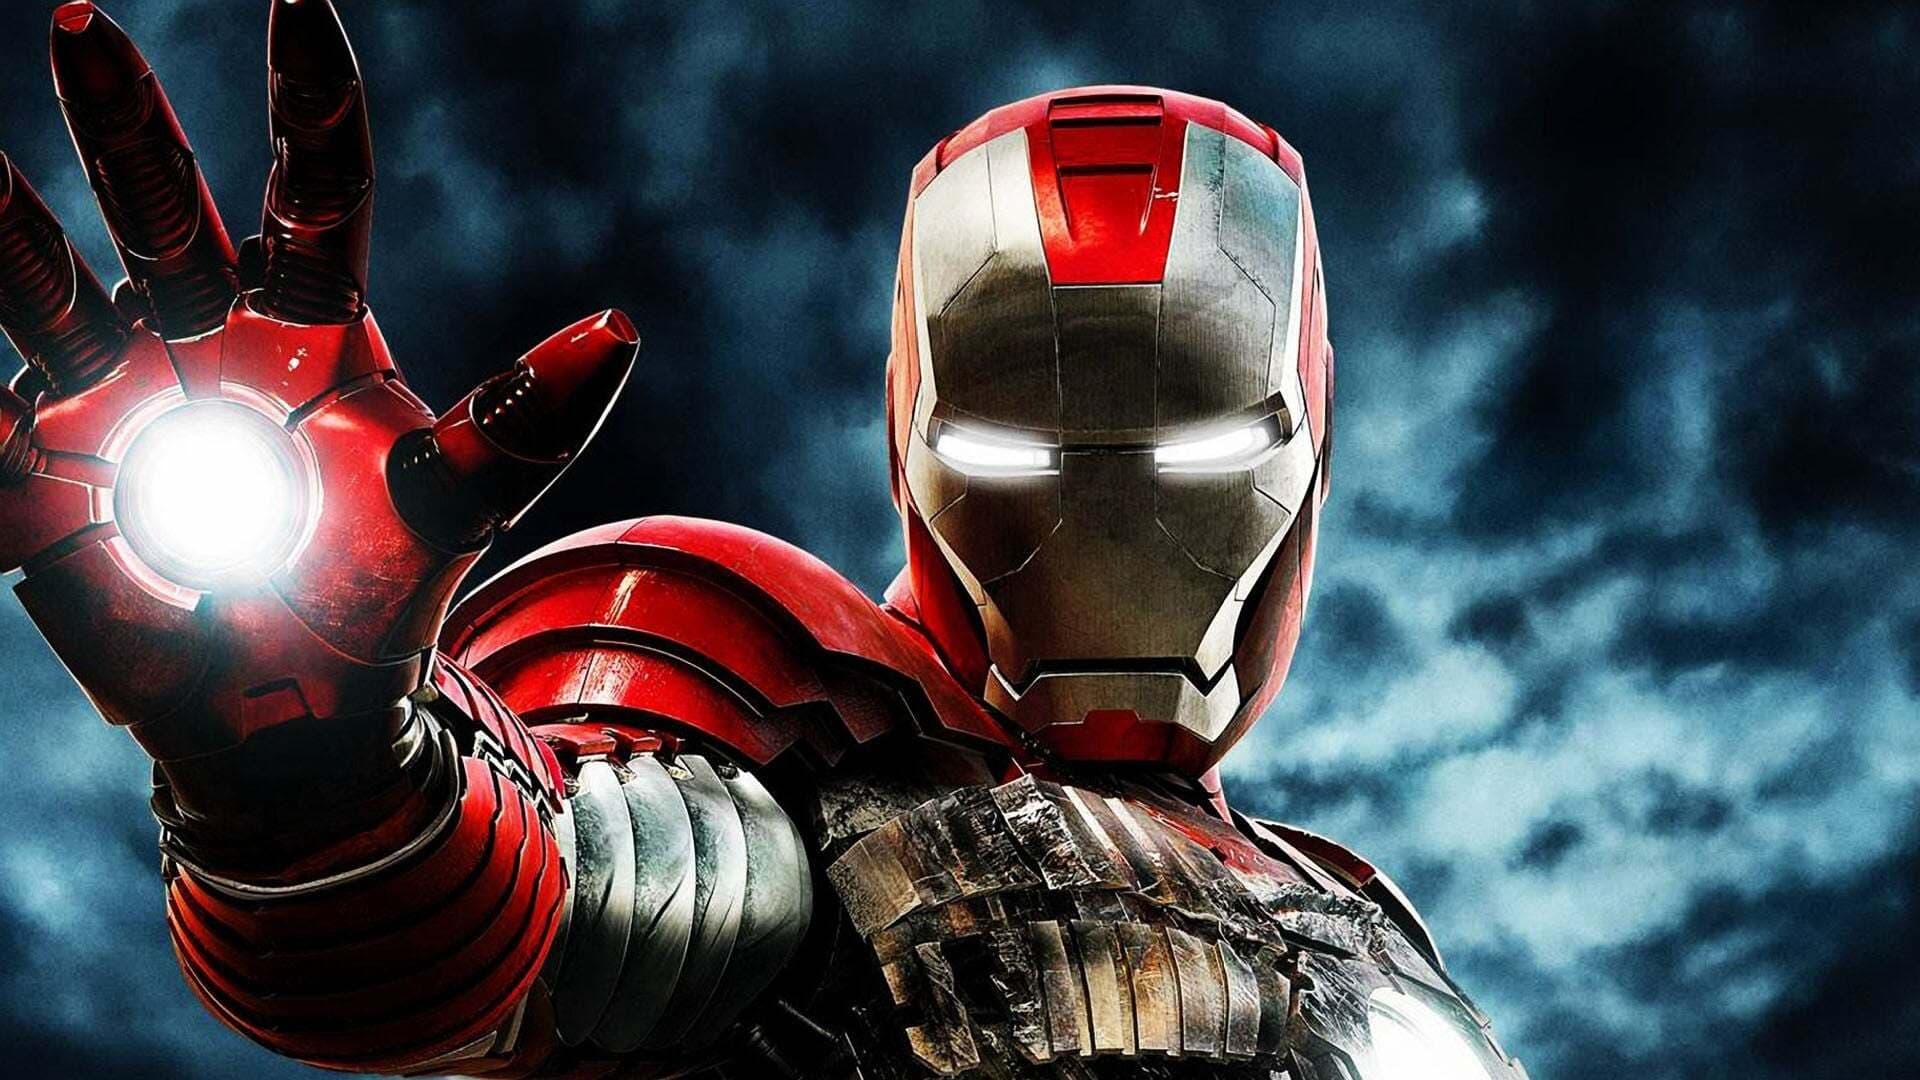 Image du film Iron Man 2 eqvrm0ywzhycmrtxny6foxjuvqdjpg